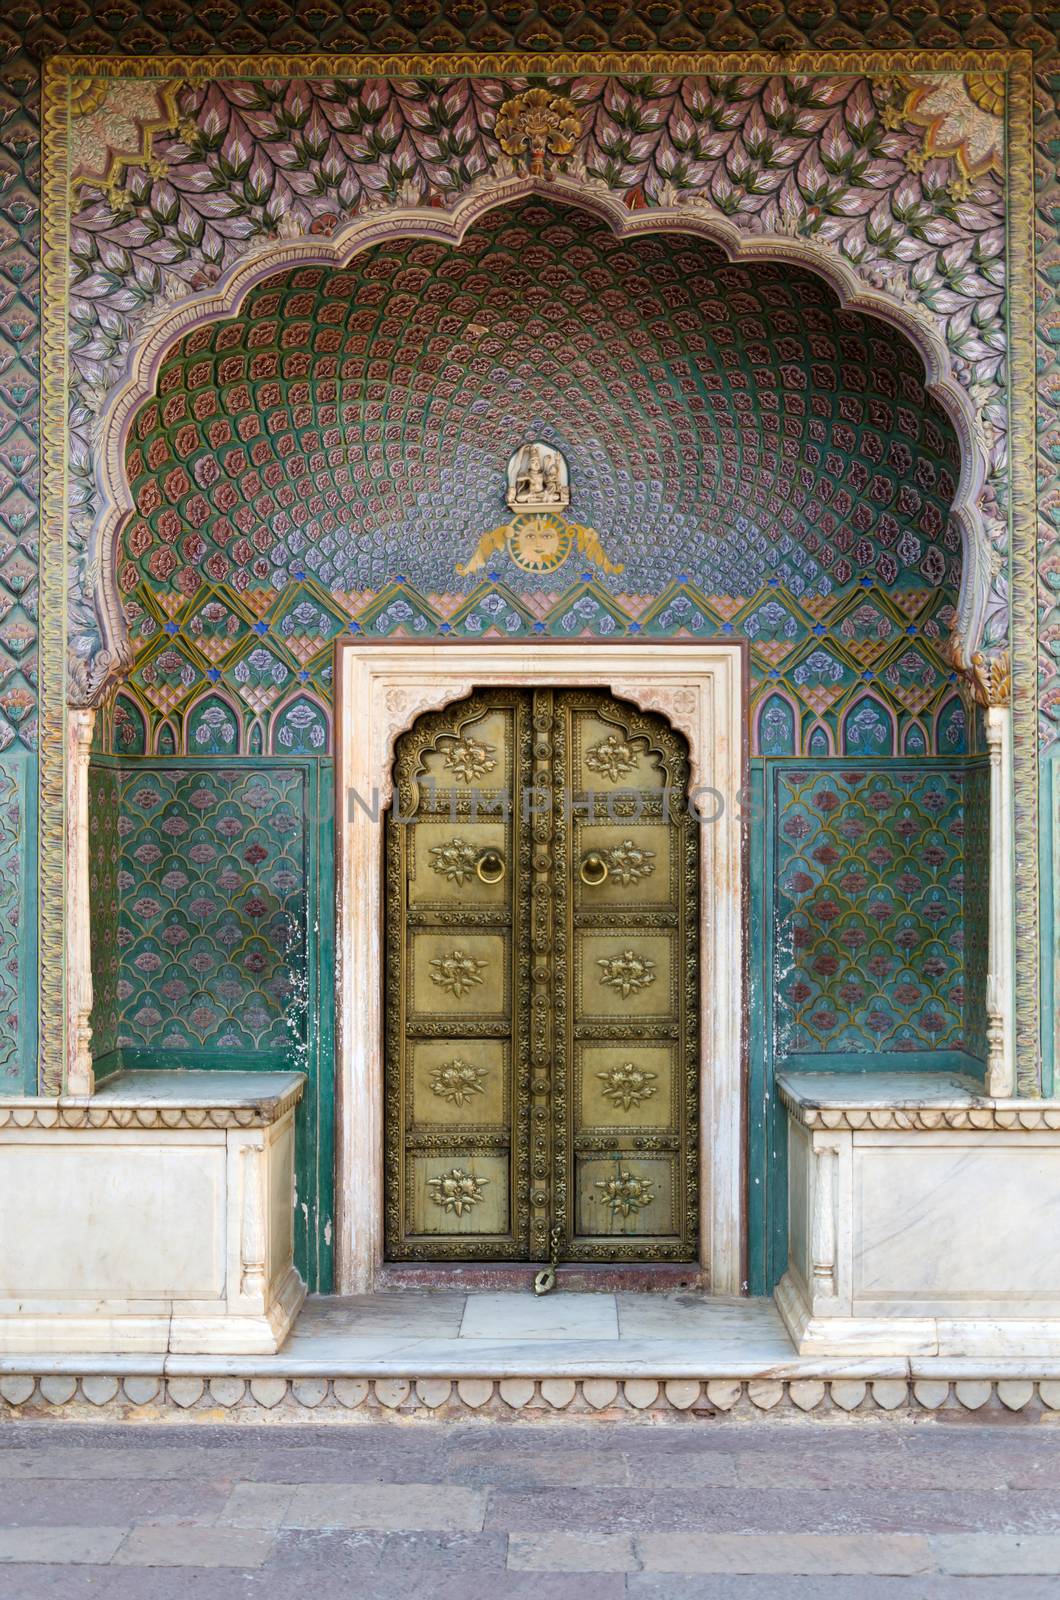 Rose Gate at the Chandra Mahal, Jaipur City Palace, Jaipur, Rajasthan, India.